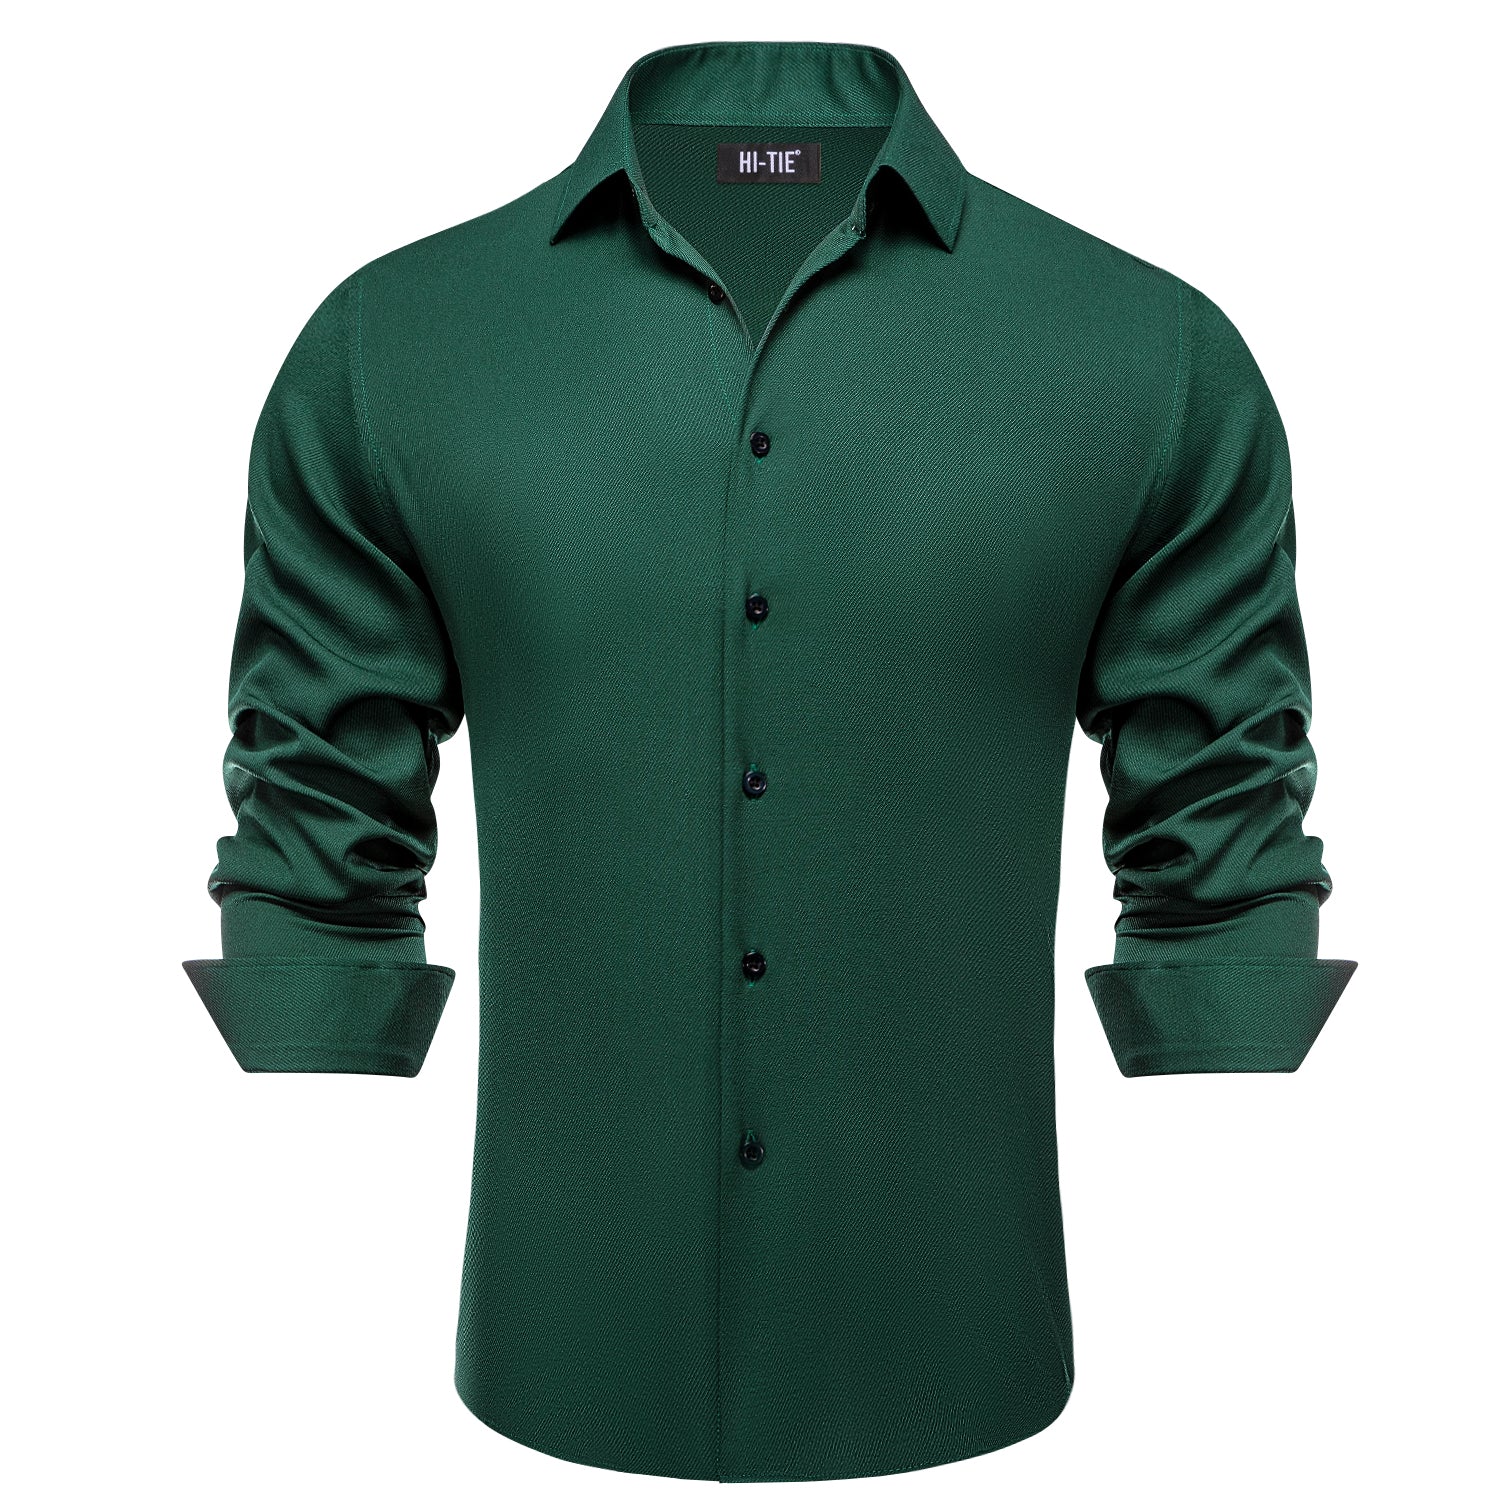 Pure Dark Green Business Casual Versatile Men's Long Sleeve Dress Shirt